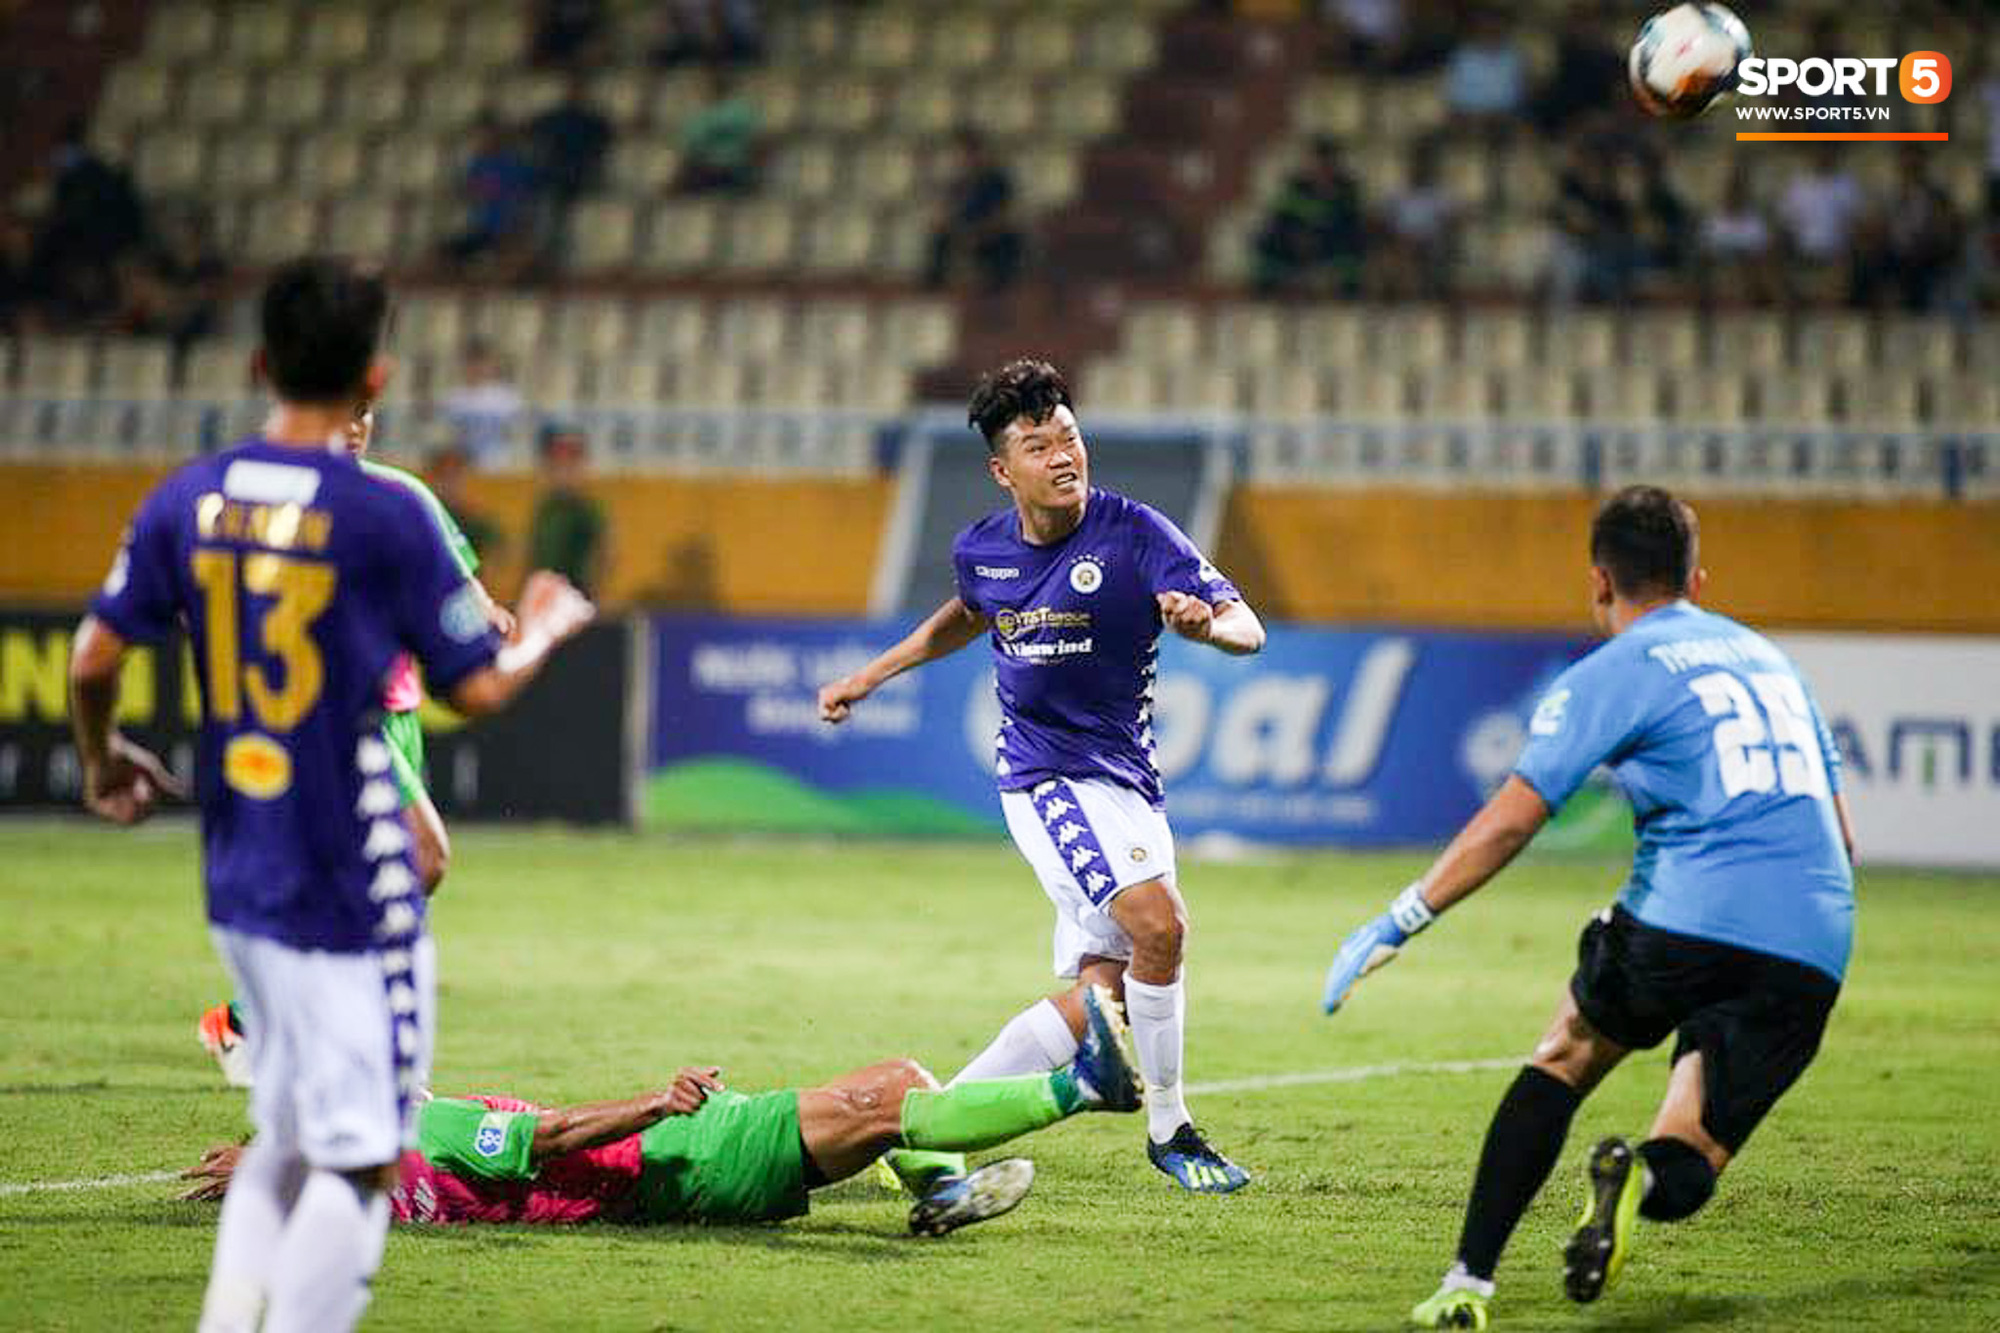 Trung vệ U23 Việt Nam đá bay bàn thắng ở khoảng cách 3m, sửa sai bằng cú dứt điểm đầy tinh tế - Ảnh 3.